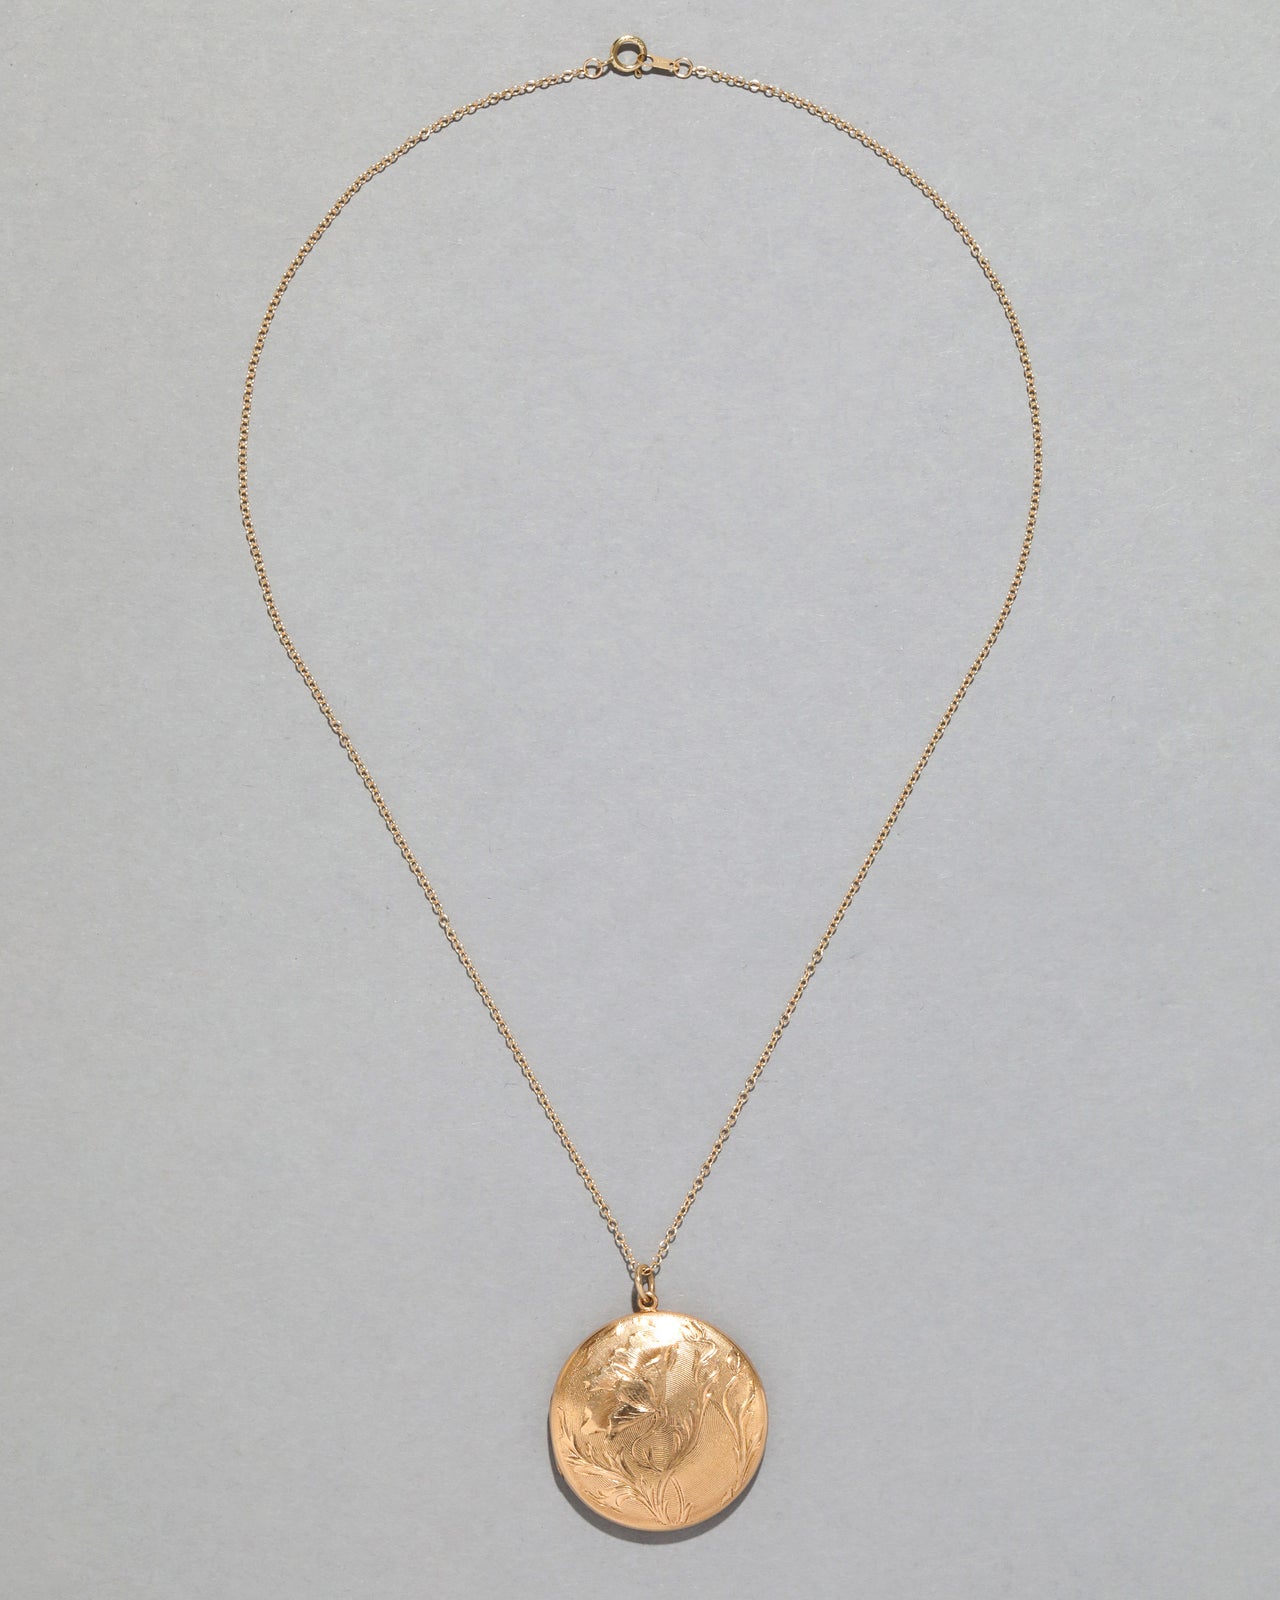 Antique 1900s 14k Gold Art Nouveau Locket Necklace - Photo 2